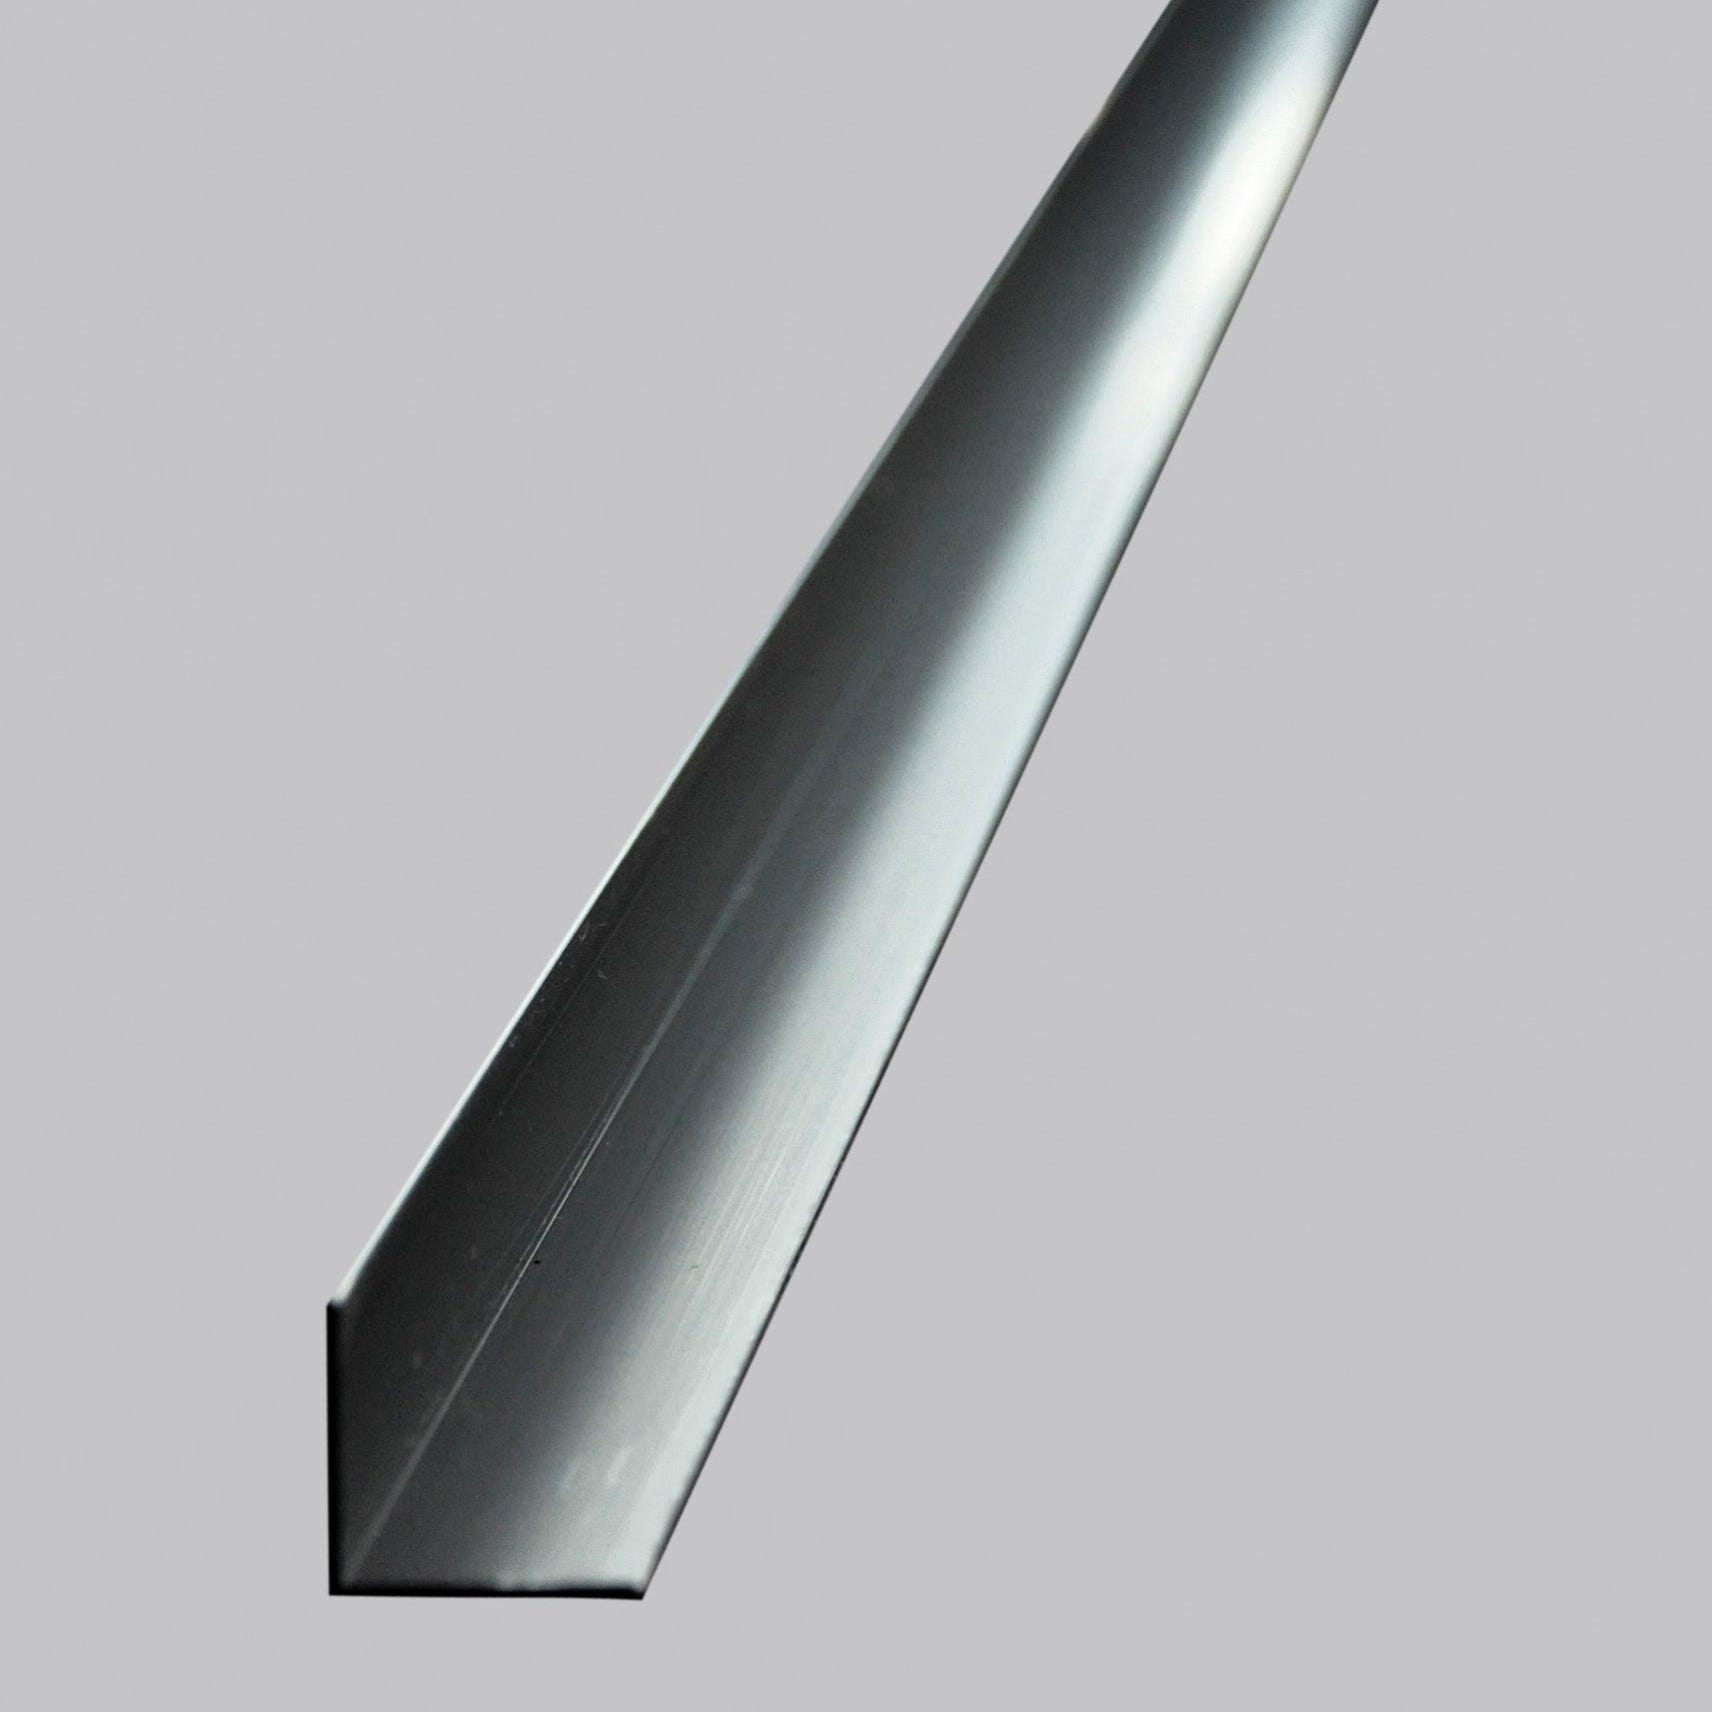 CORNIERE PVC BLANC 20 X 20 X 1.5 - 2.6 M